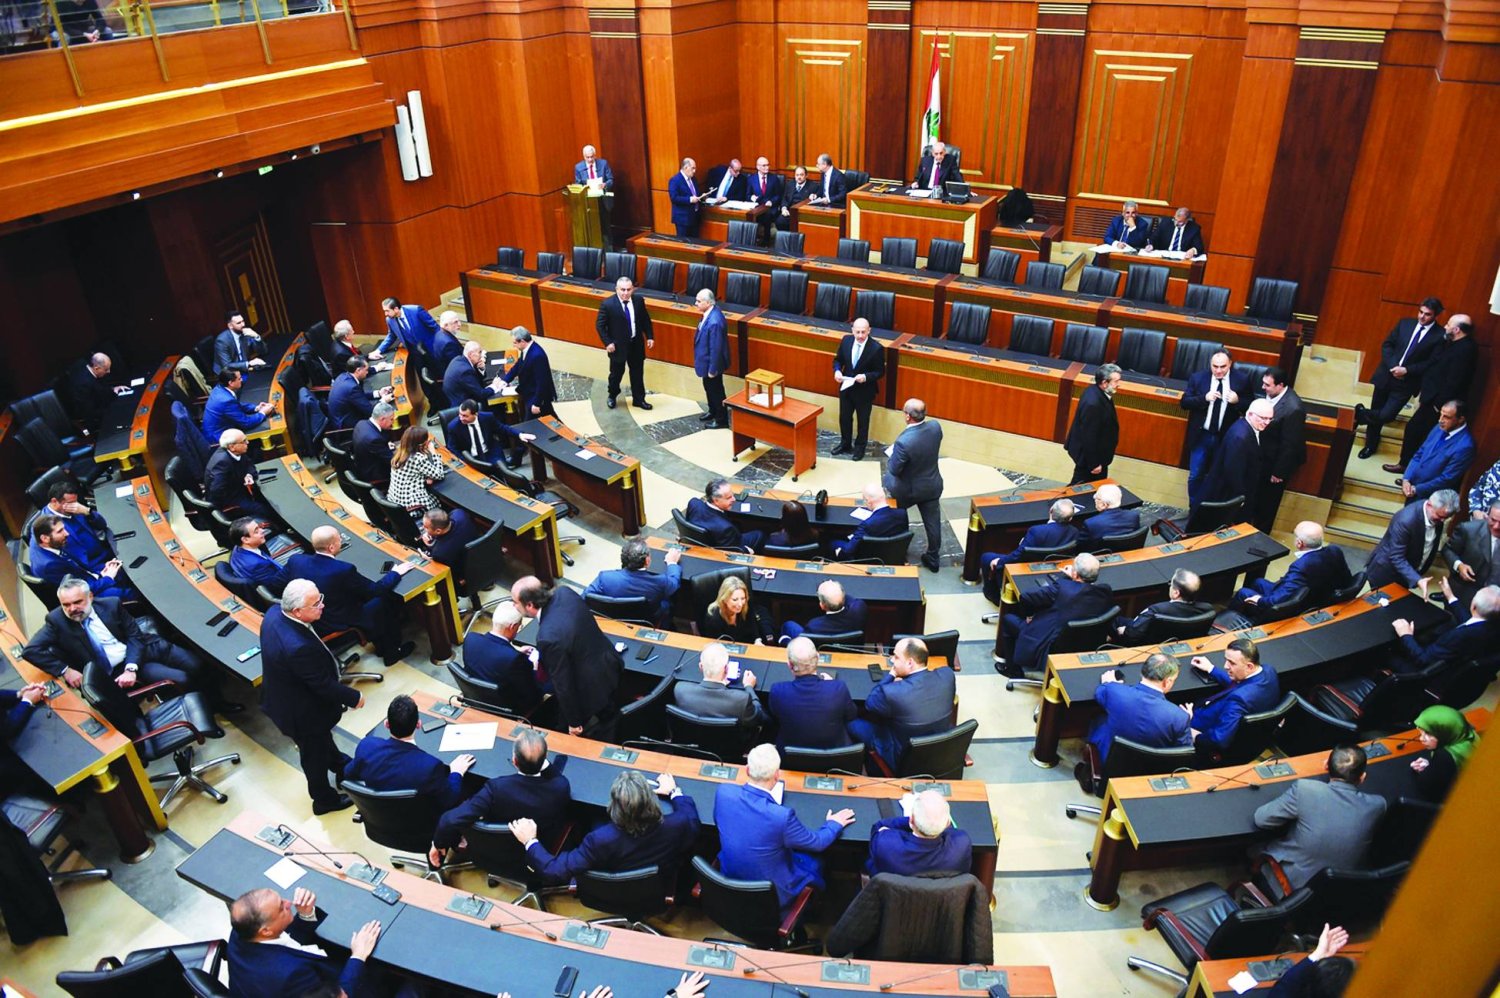  البرلمان اللبناني منعقداً في جلسة عامة في يناير الماضي (المجلس النيابي)